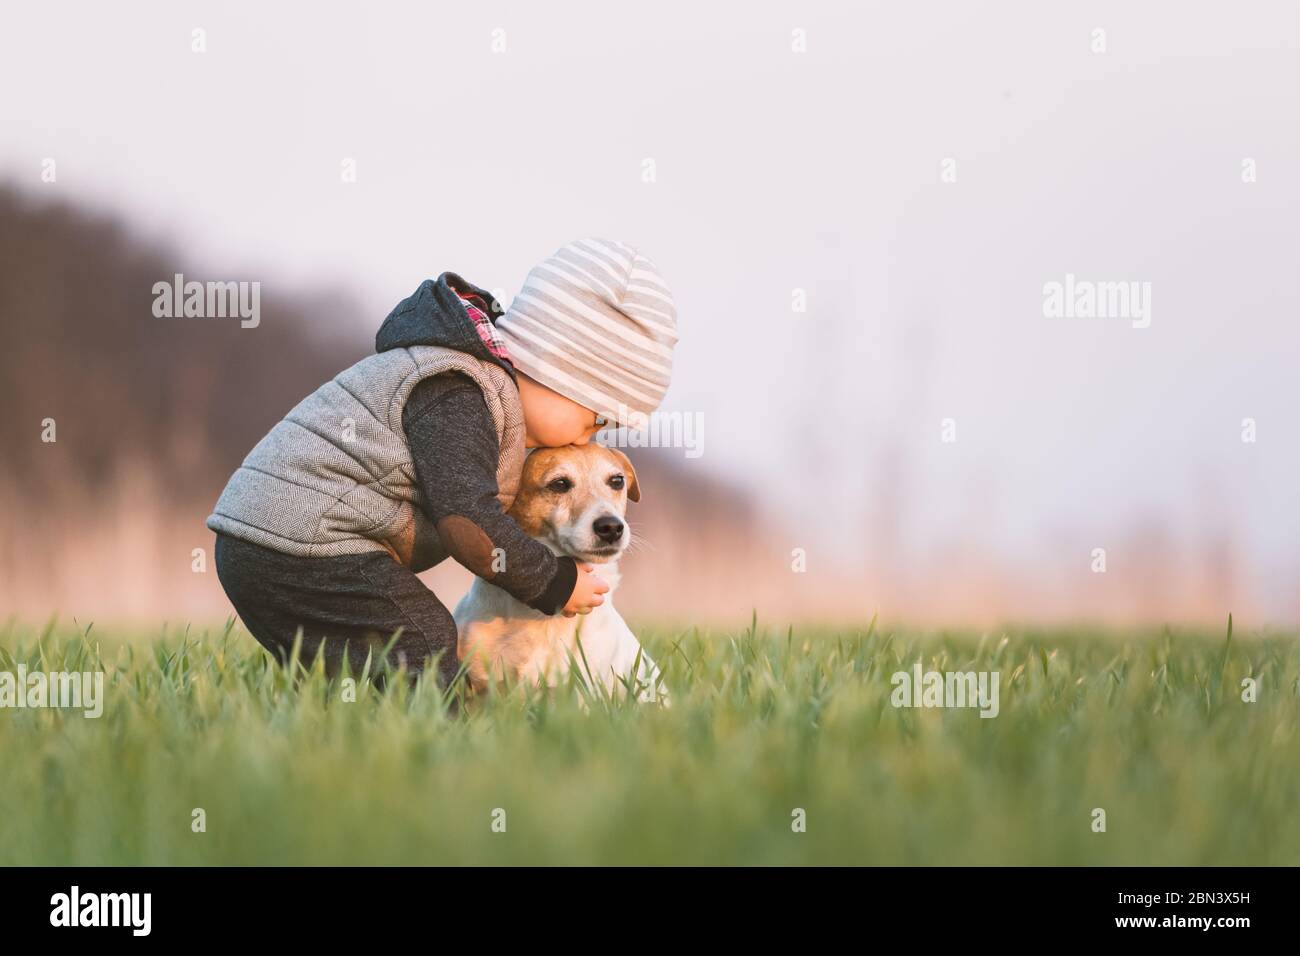 Niño pequeño en chaqueta amarilla con jota russel terrier cachorro abrazarse uno al otro en el campo de primavera en la puesta de sol Foto de stock